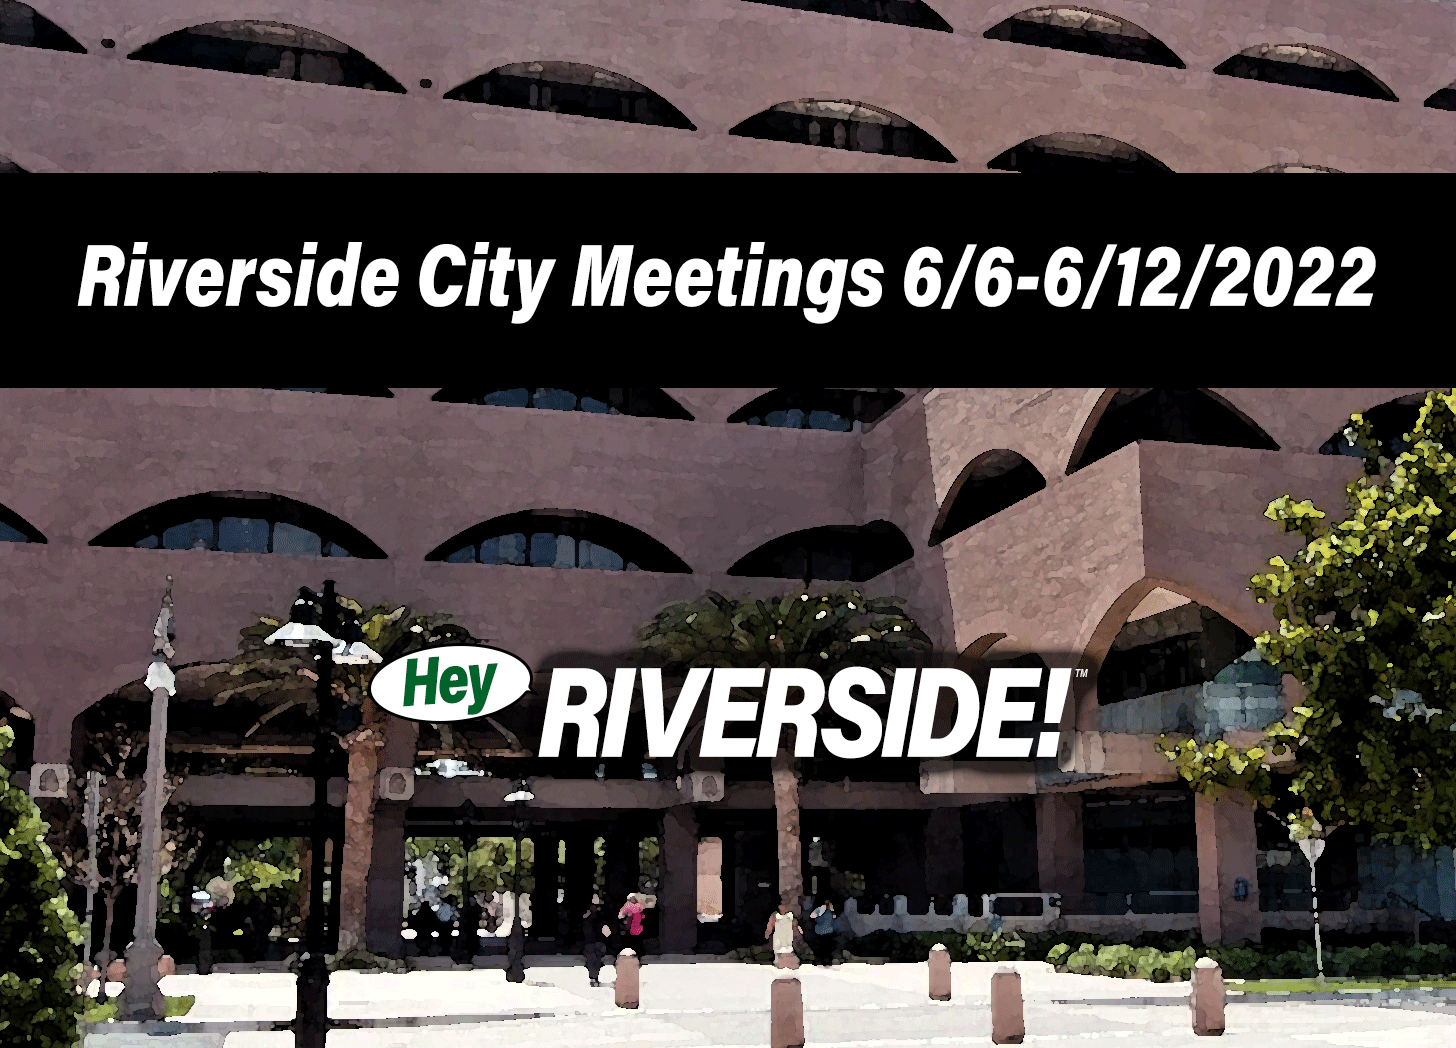 Riverside City Meetings June 6 through June 12 2022